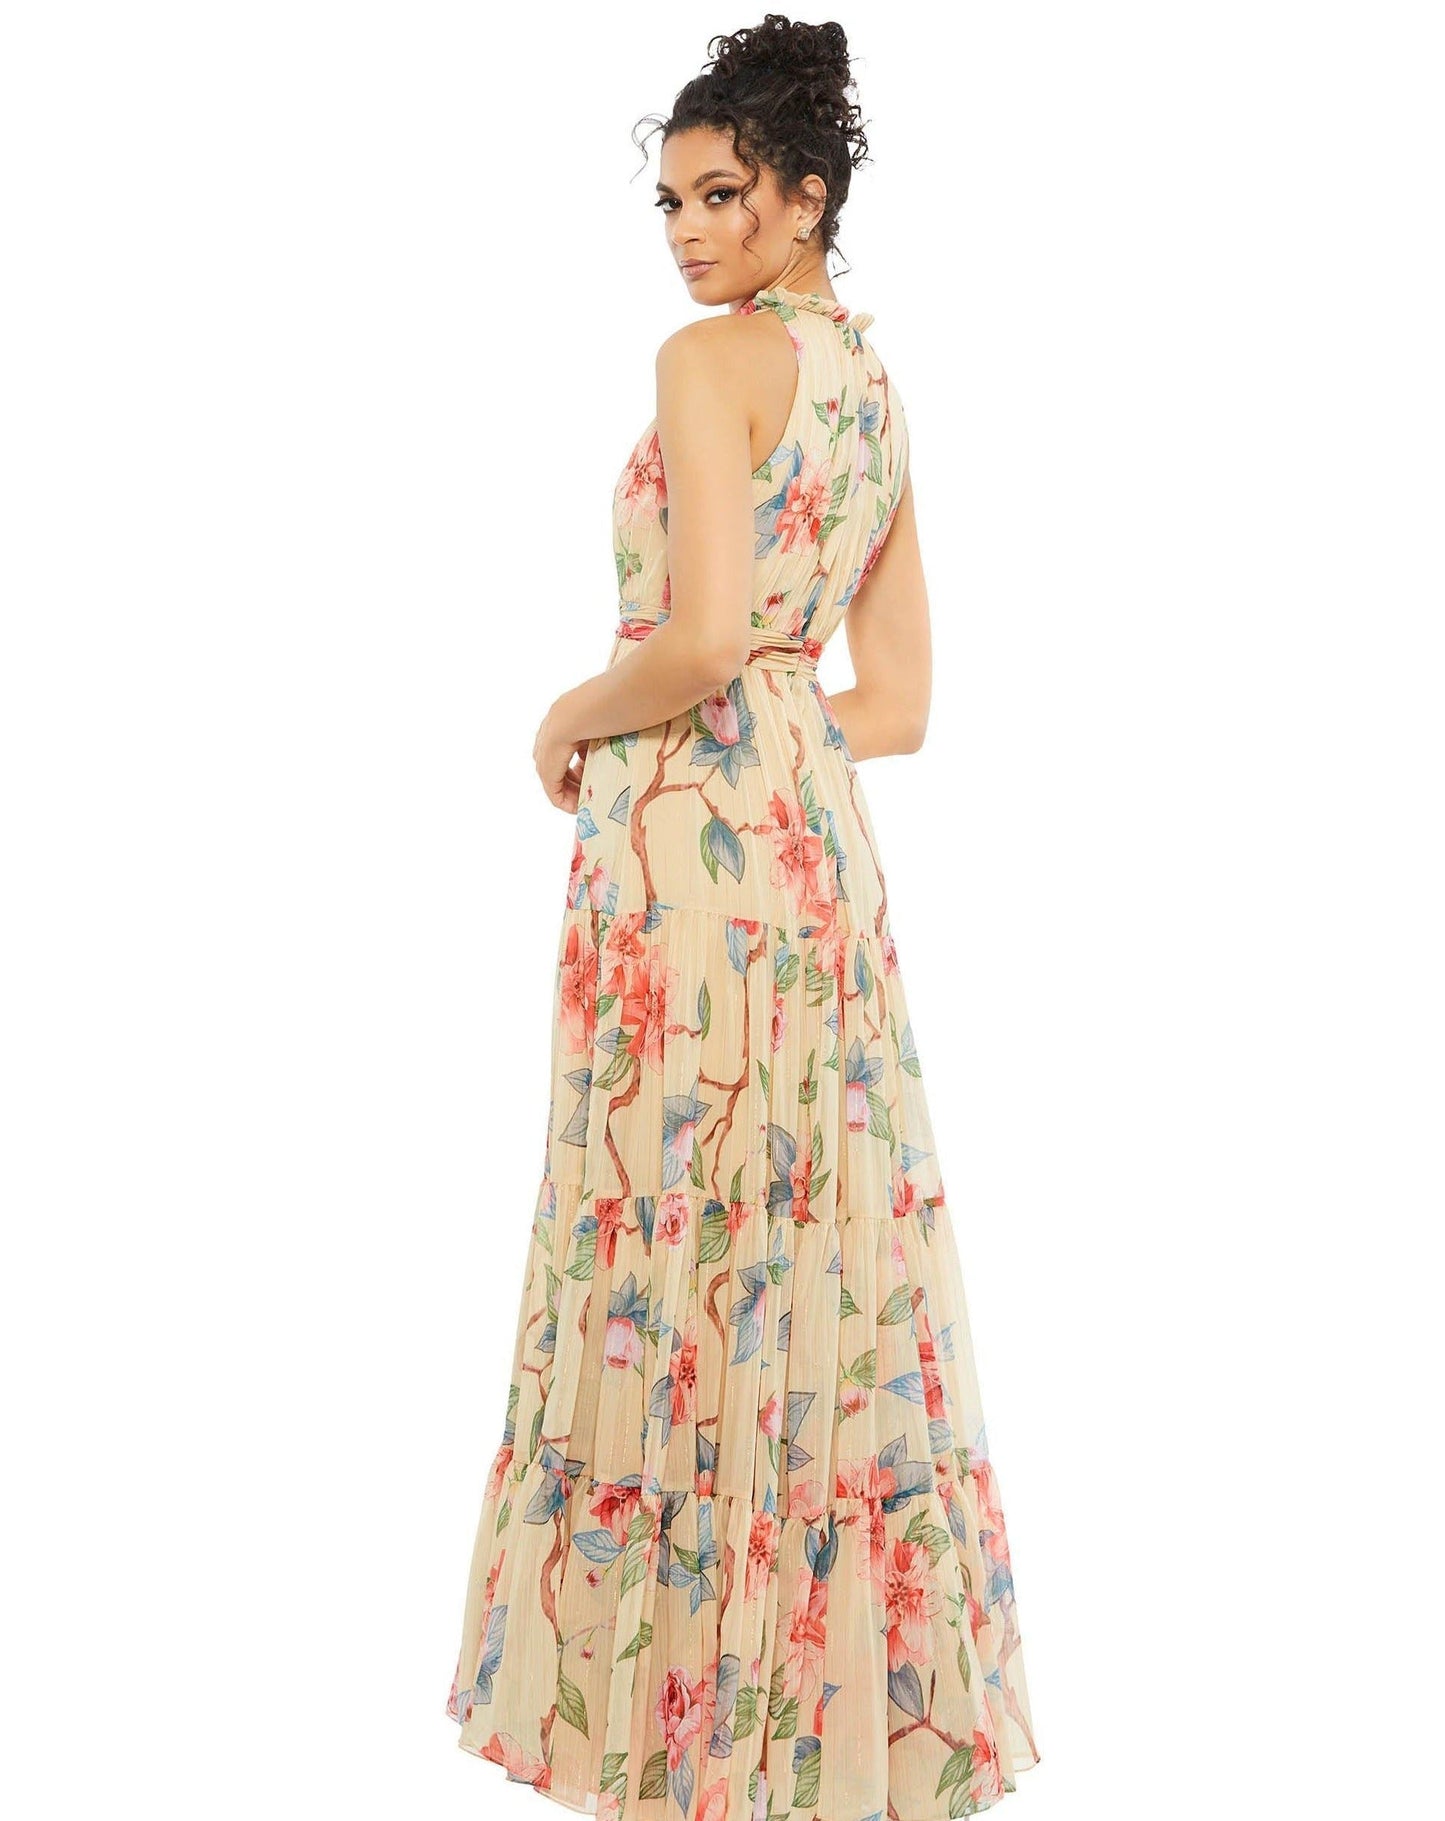 Mac Duggal Long Formal Halter Floral Dress 55429 - The Dress Outlet